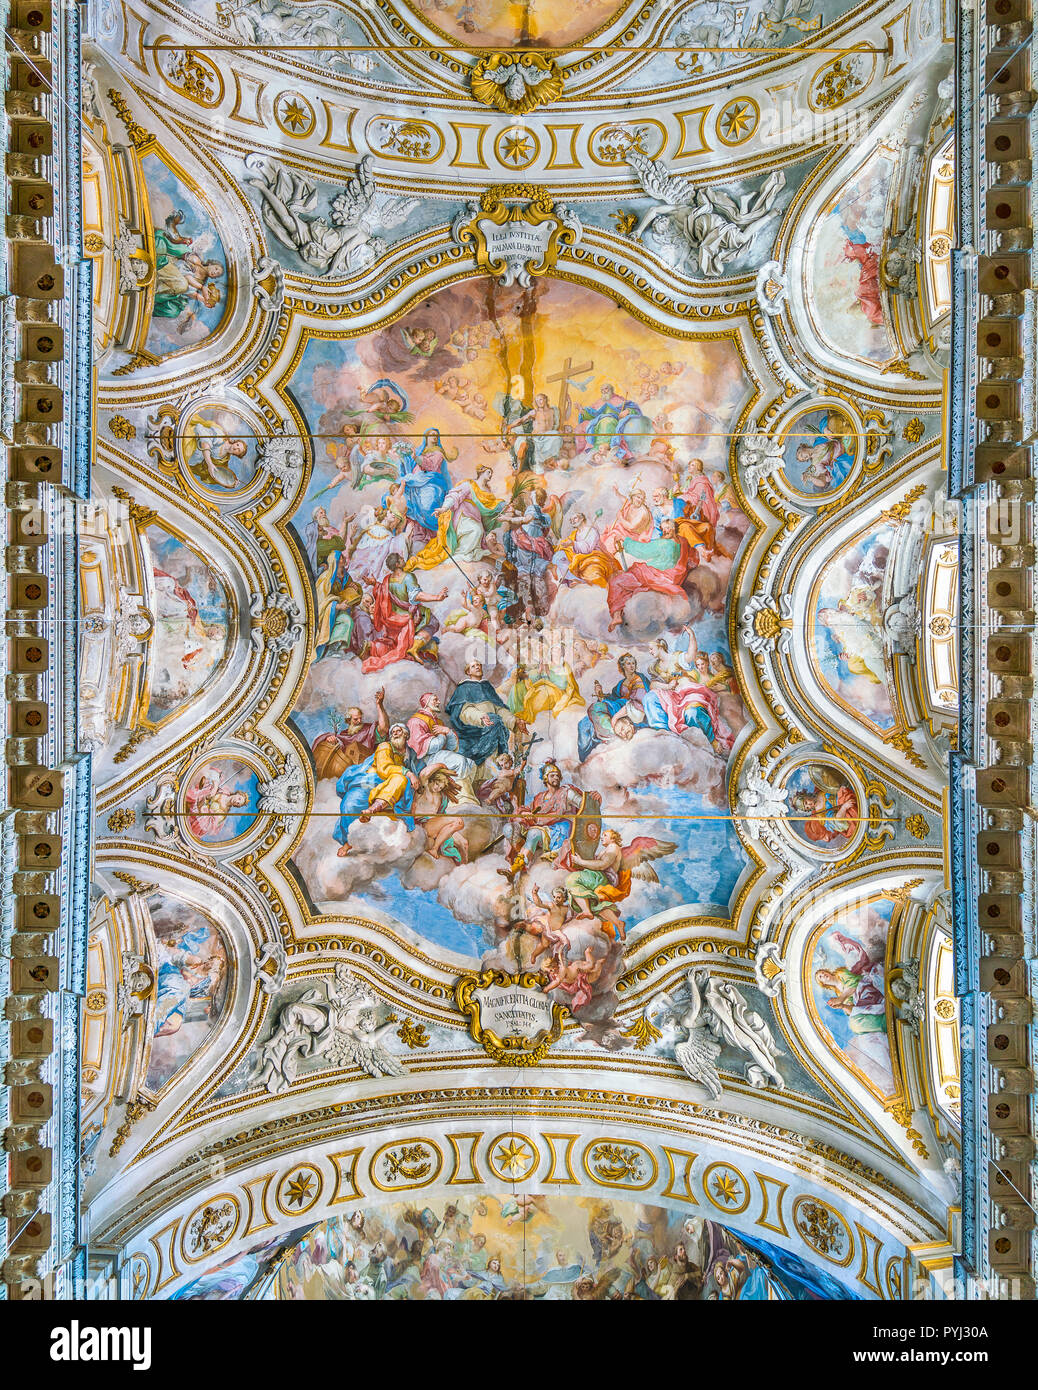 Fresco" Trionfo di Santa Caterina" von Filippo Randazzo in der Kirche Santa Caterina in Palermo. Sizilien, Süditalien. Stockfoto